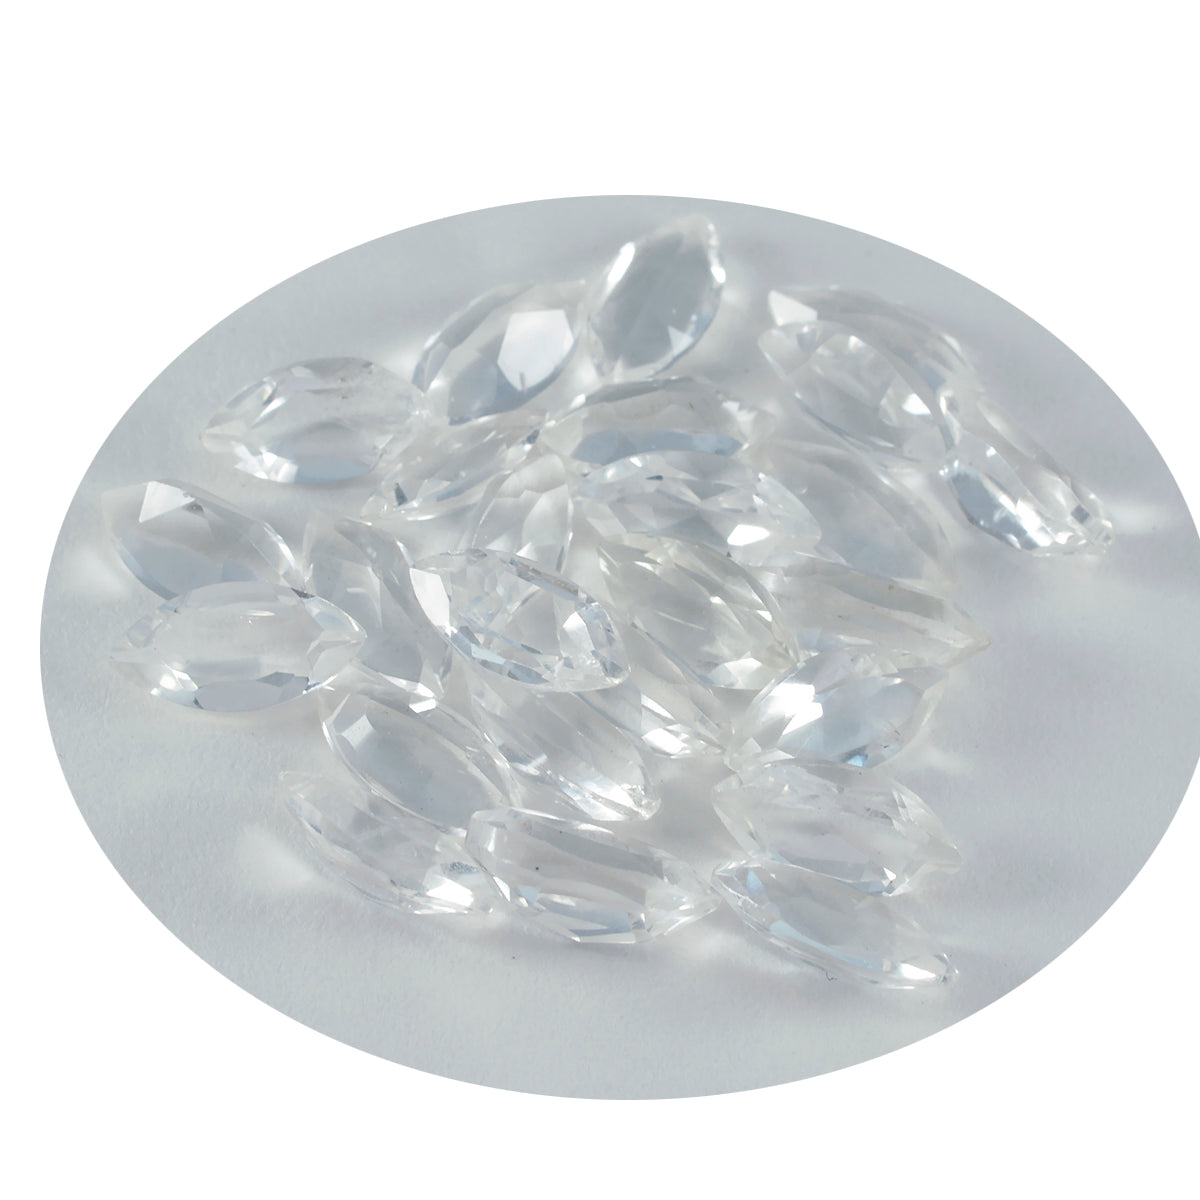 Riyogems 1 pièce de quartz cristal blanc à facettes 4x8mm forme marquise qualité aa pierre précieuse en vrac